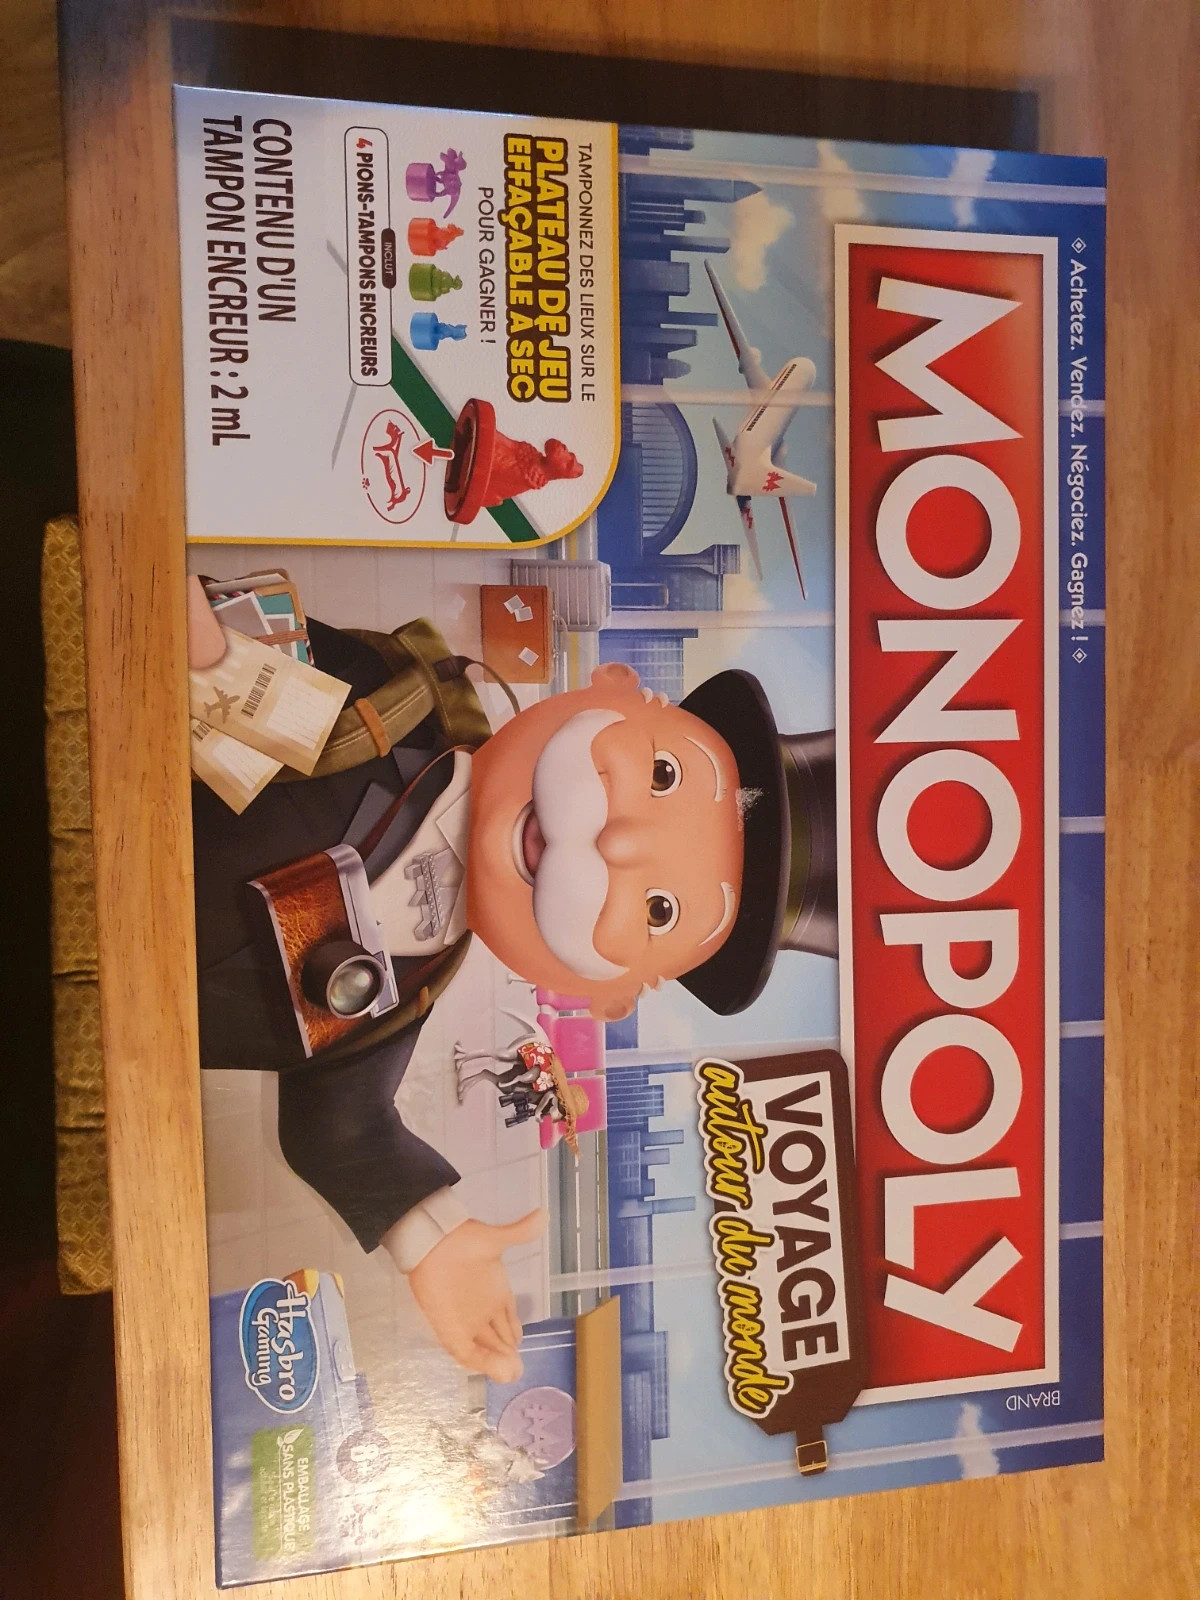 Monopoly Voyage autour du monde, jeu de plateau (version française) :  : Jouets